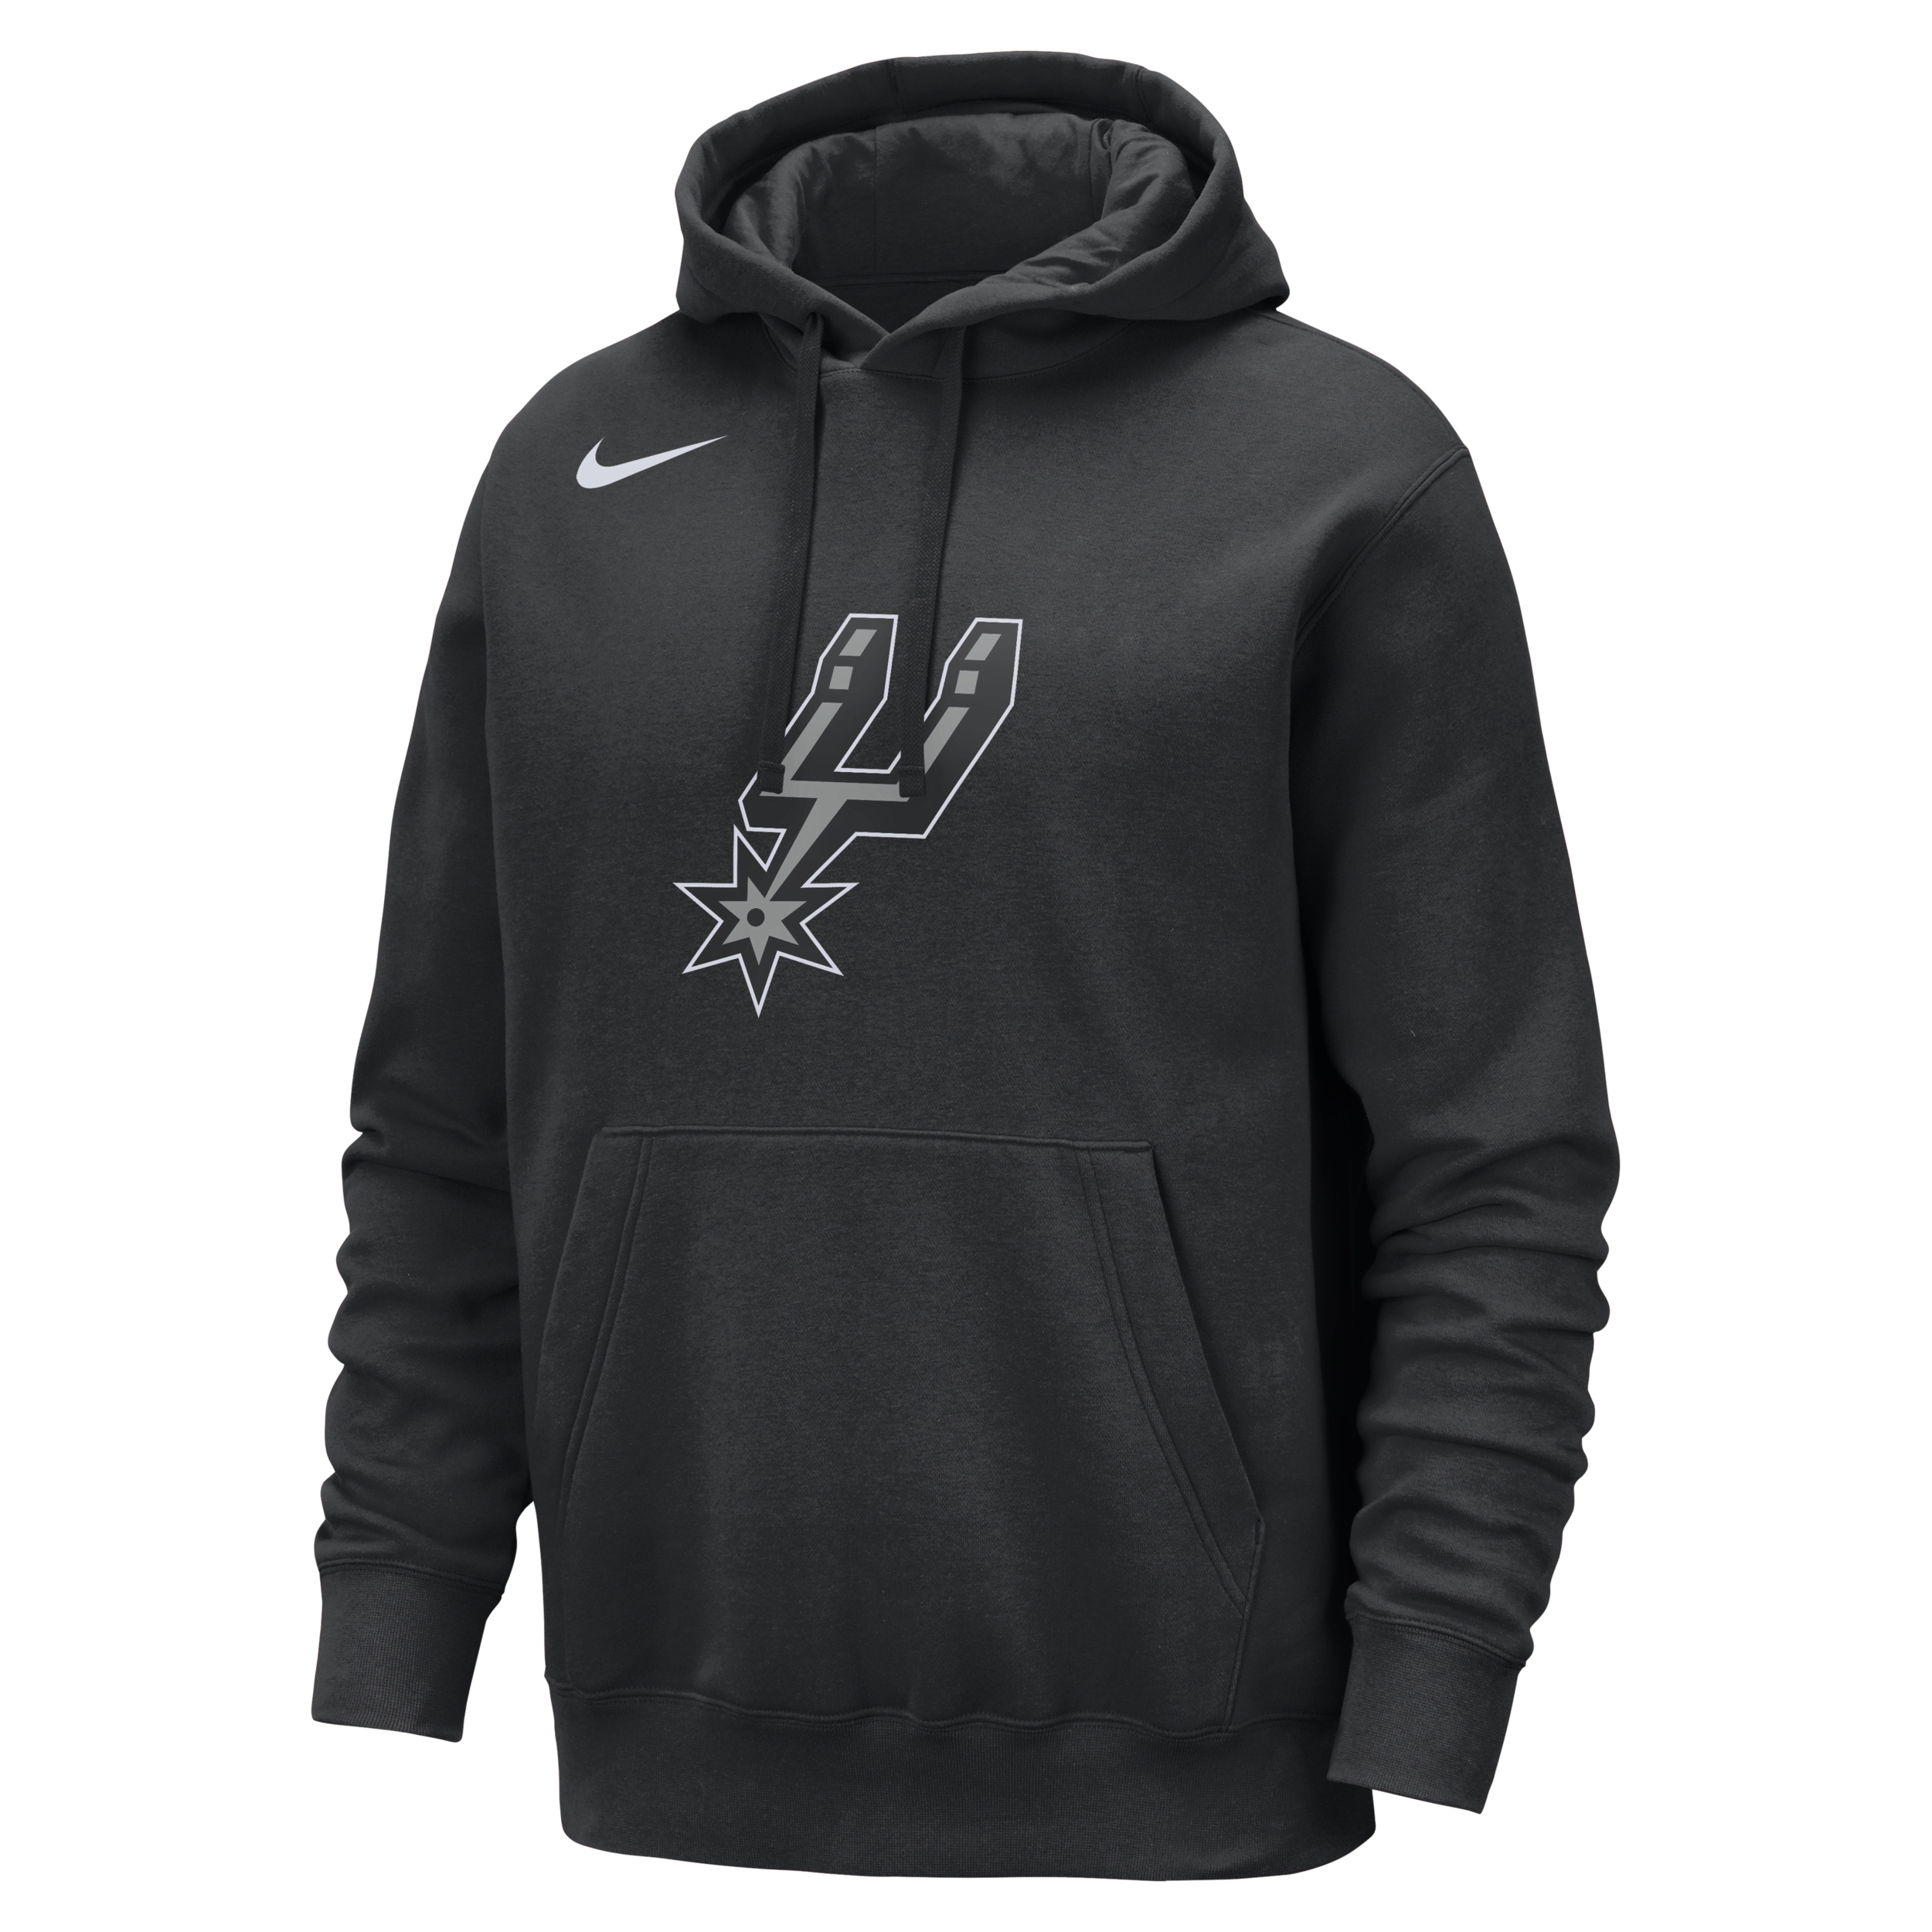 San Antonio Spurs Club Sudadera con capucha Nike de la NBA - Hombre - Negro